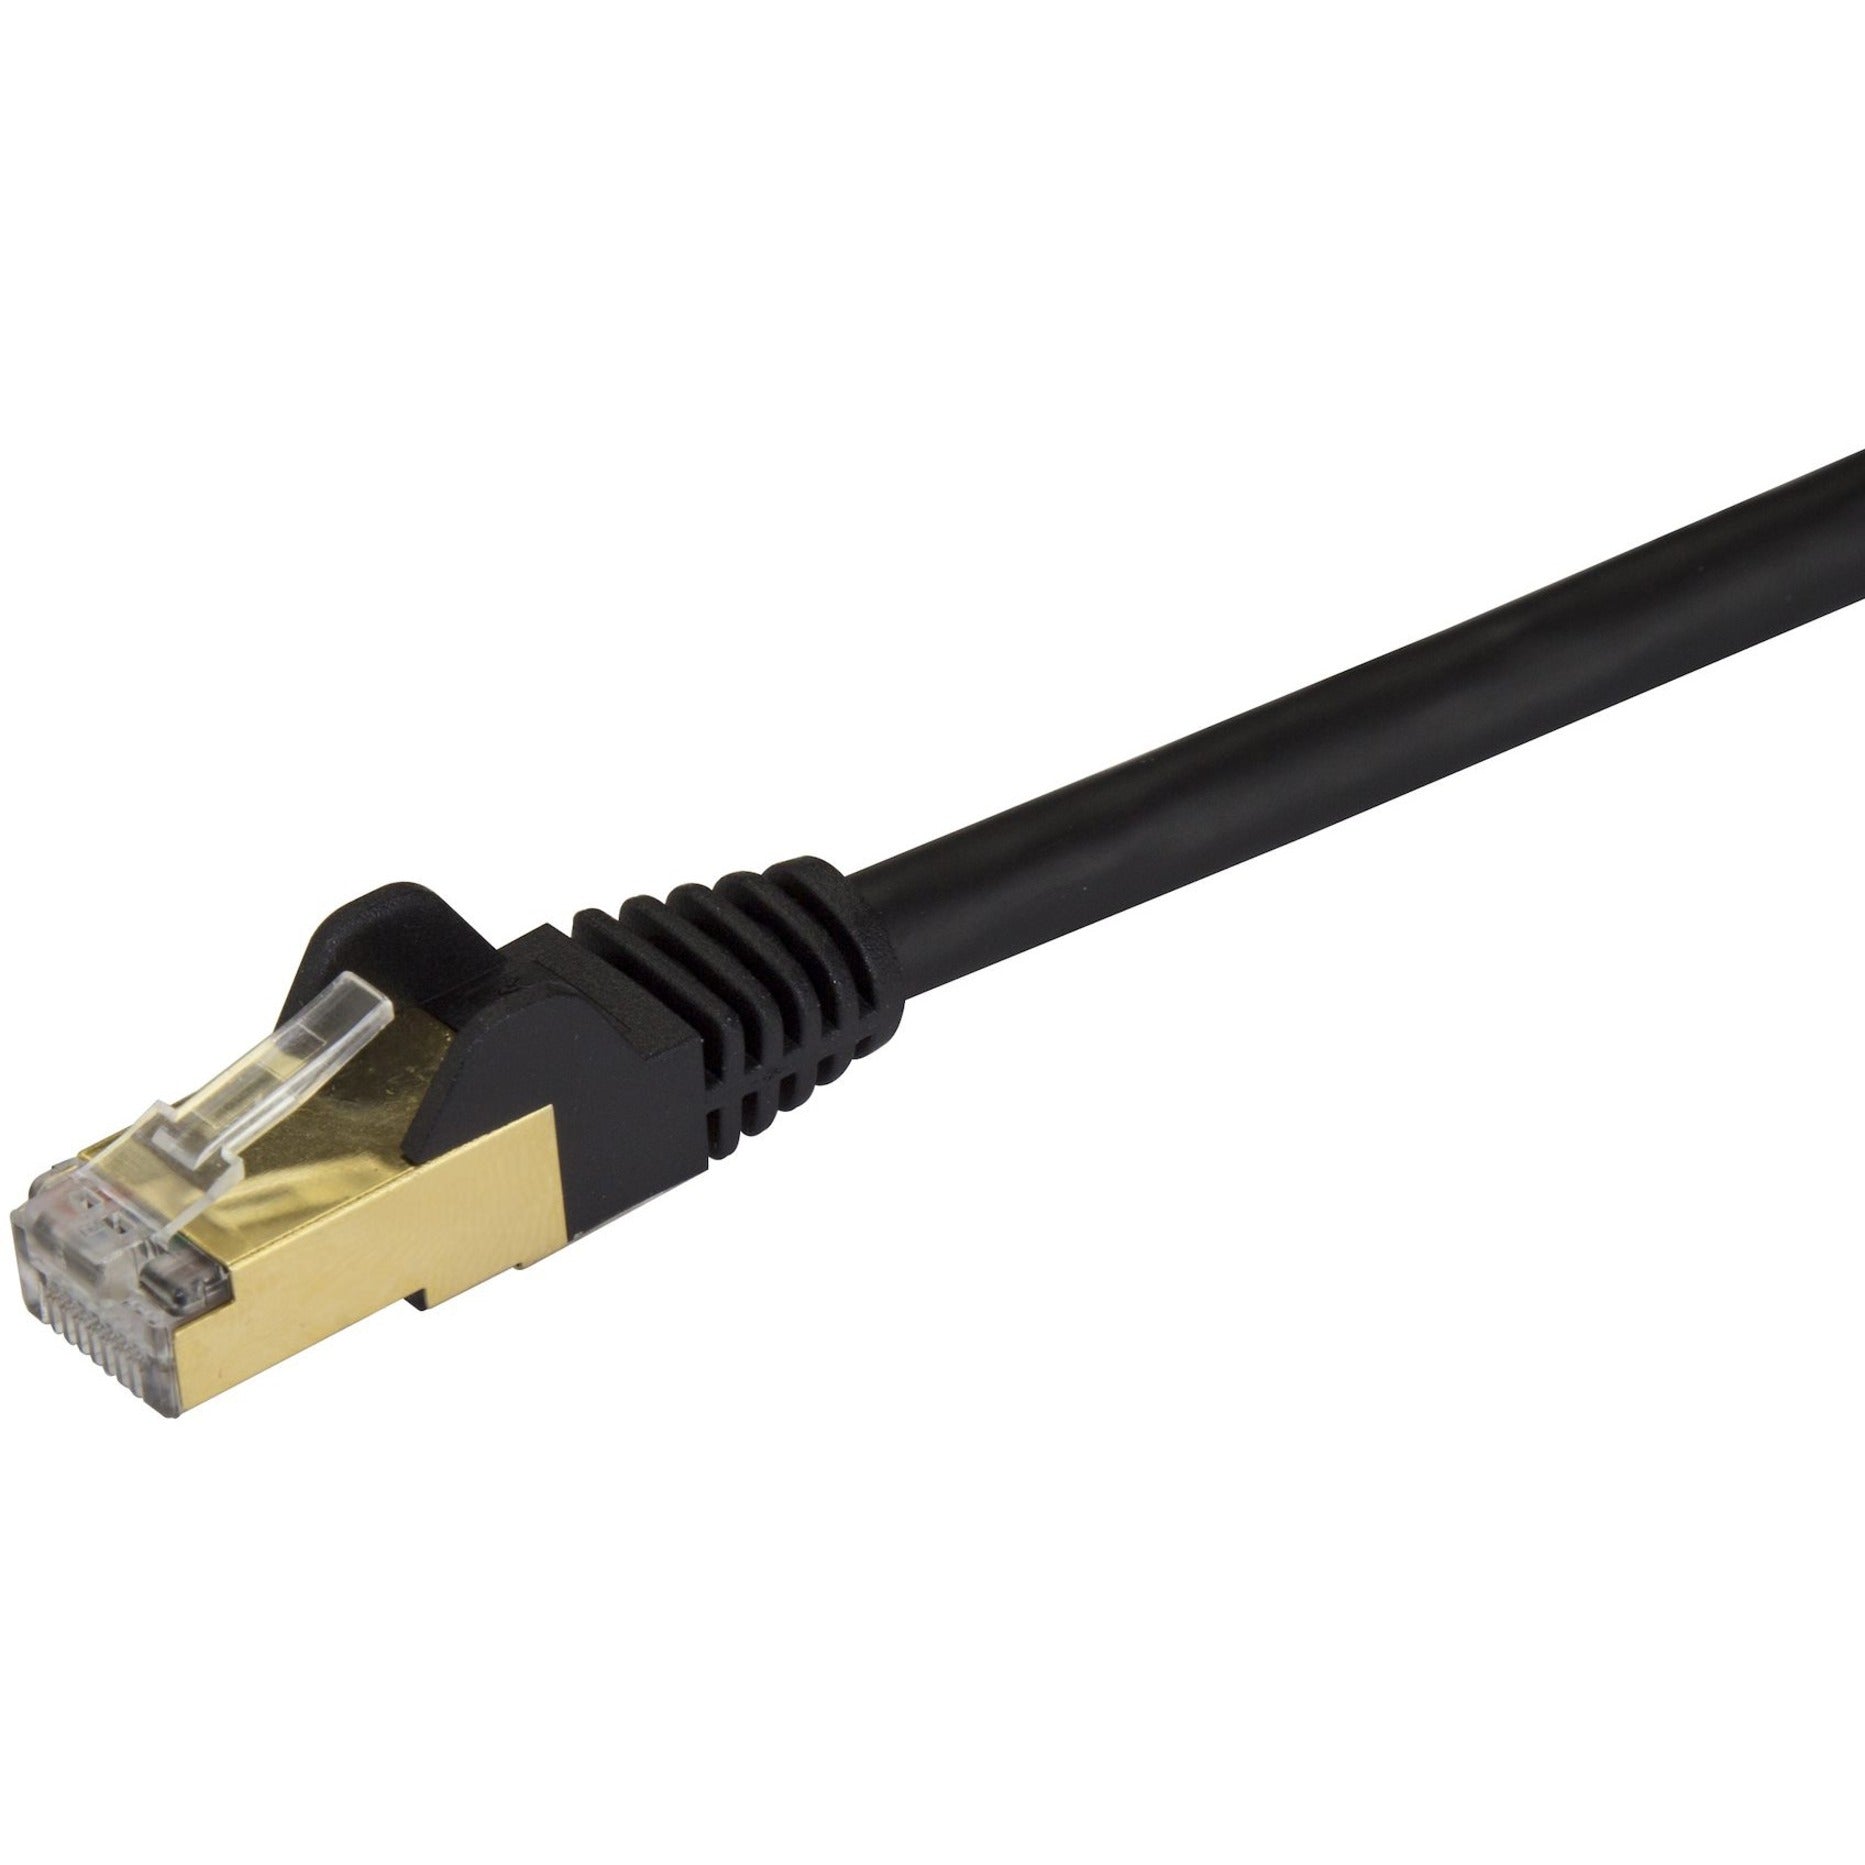 StarTech.com C6ASPAT6BK Cat6a Ethernet Patch Cable - Schermato (STP) - 6 ft. Nero RJ45 Ethernet Cord senza incastri